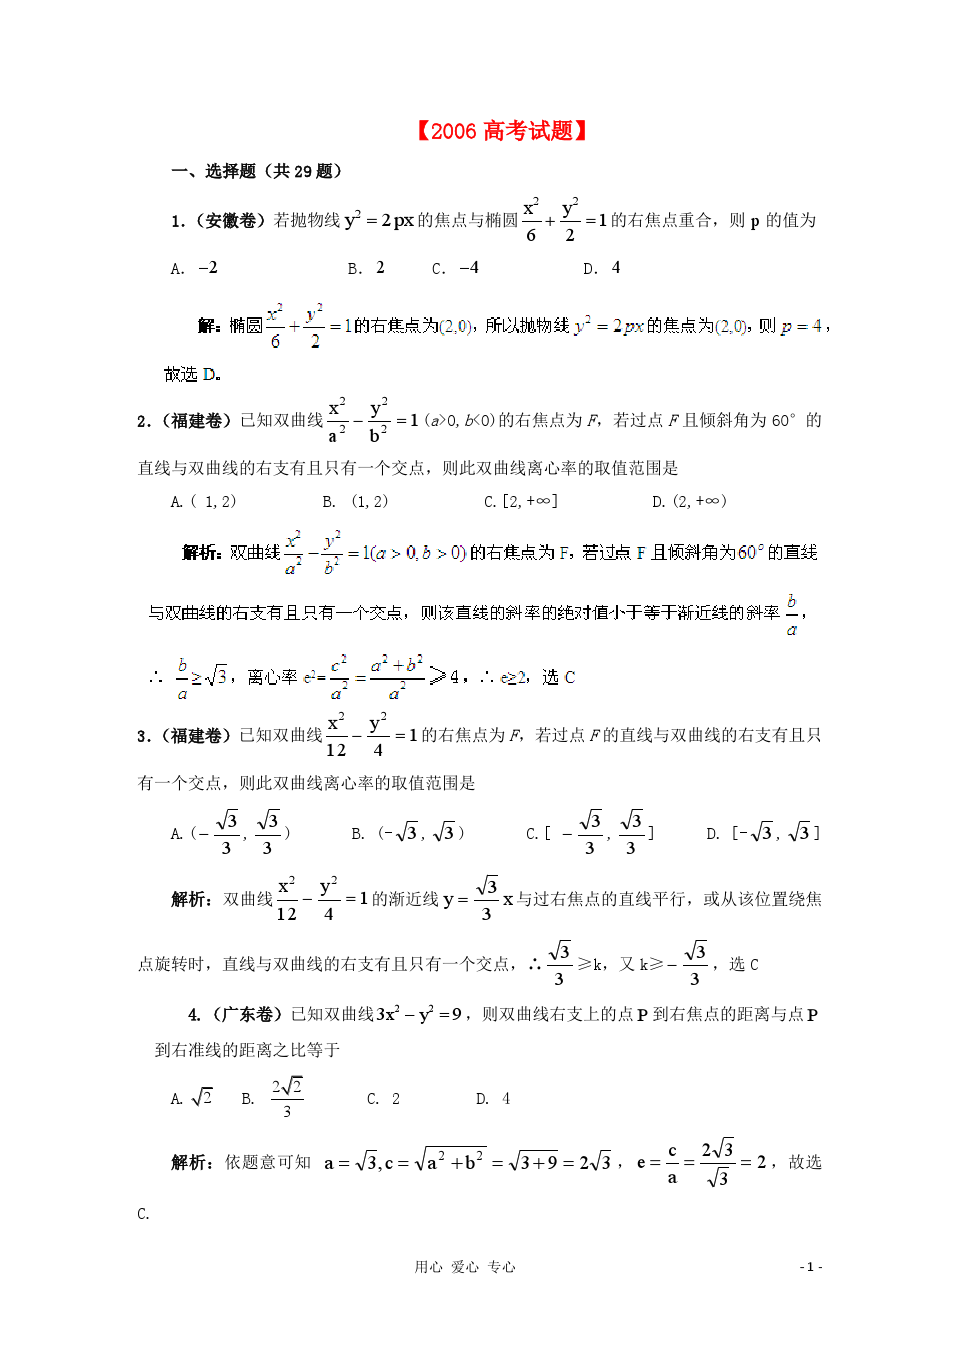 【备战2013年】历届高考数学真题汇编专题10_圆锥曲线_理(2000-2006)